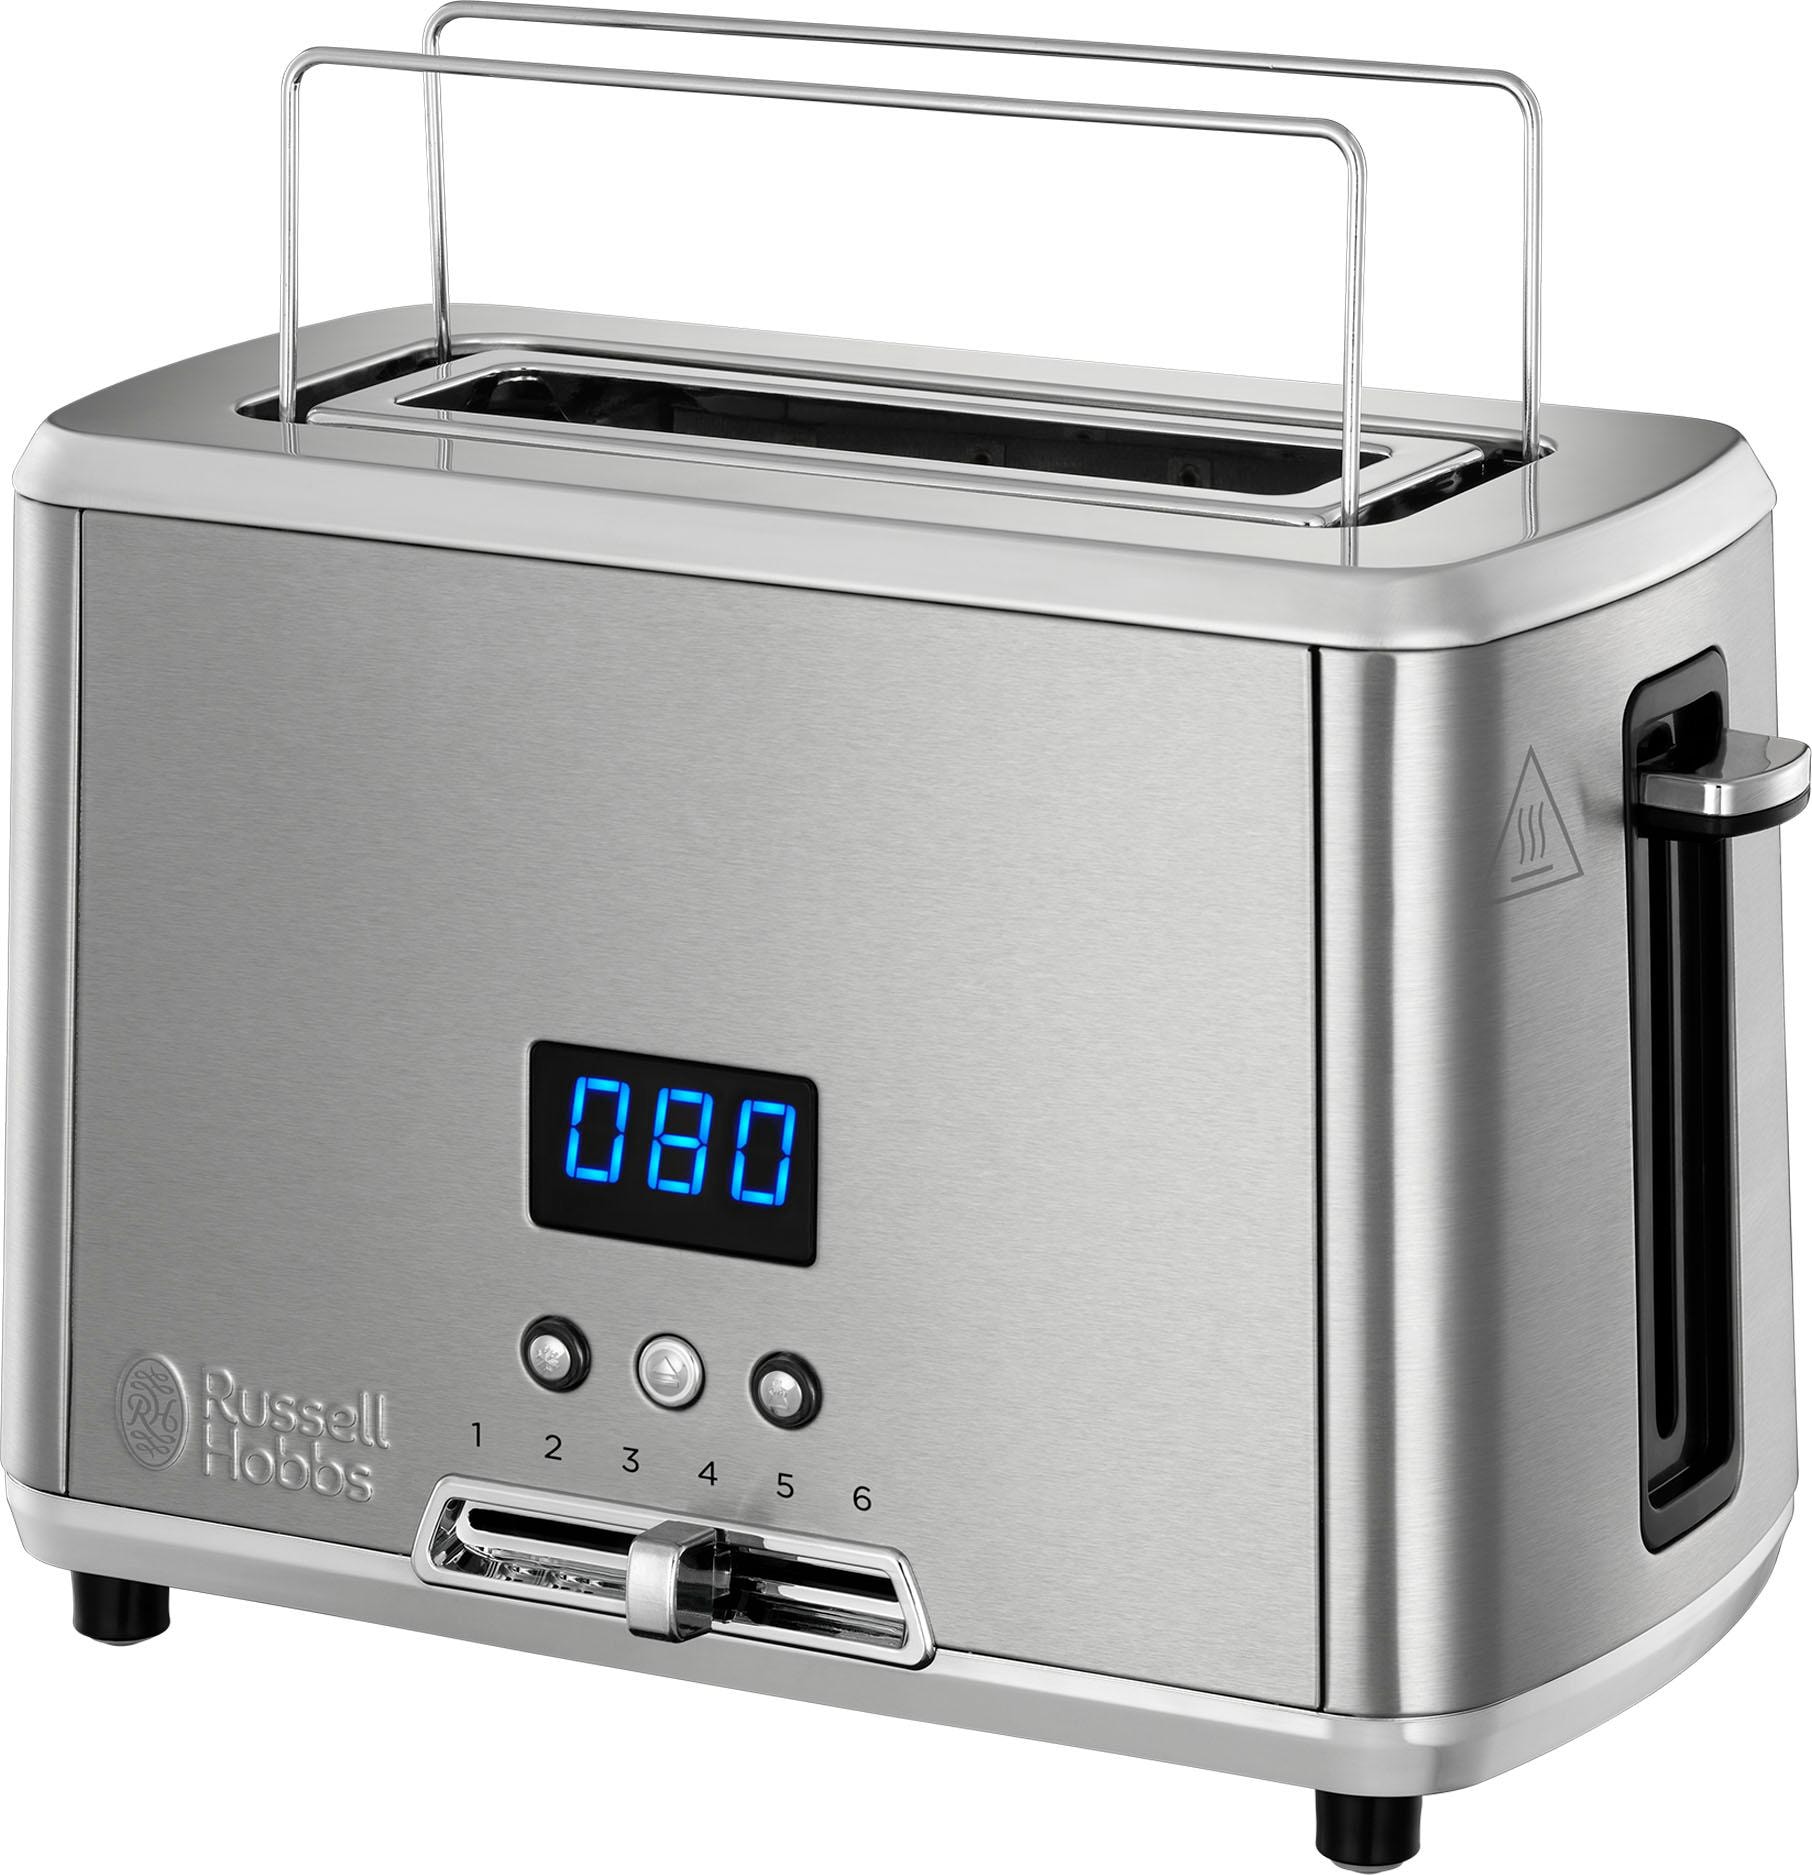 auf Mini Schlitz, HOBBS 24200-56«, Home kaufen 820 1 Rechnung »Compact langer W RUSSELL Toaster